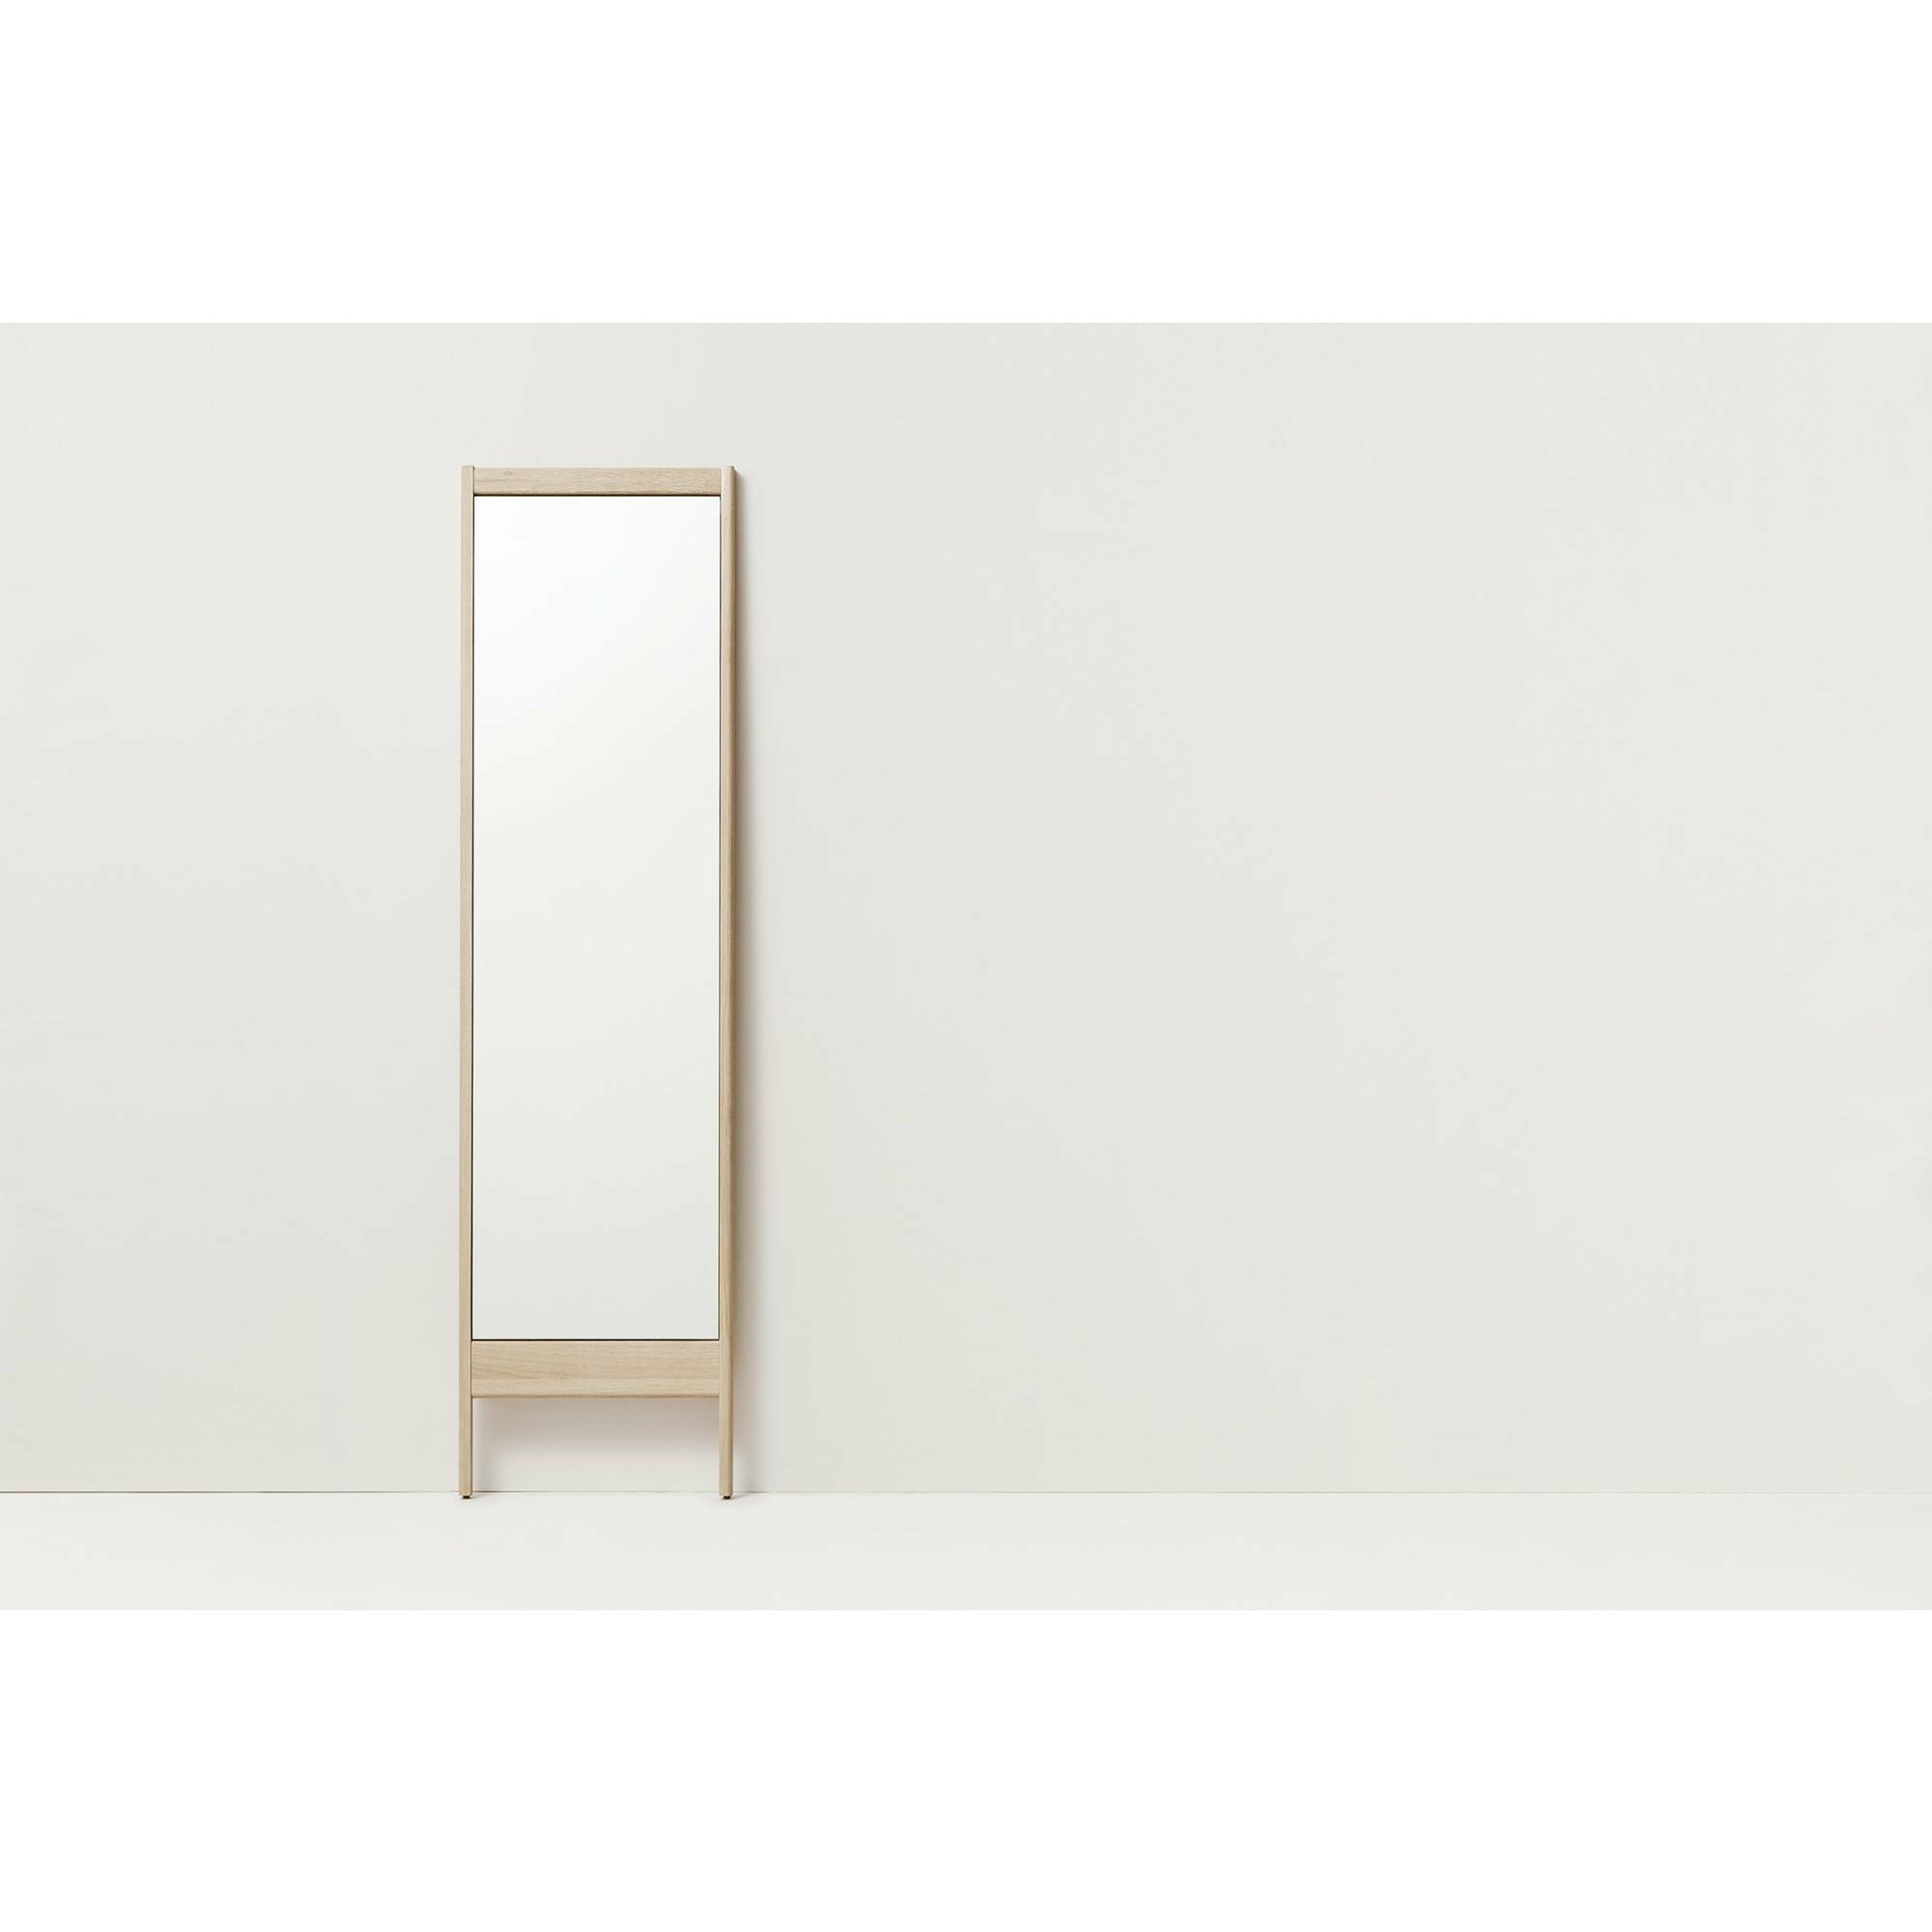 Form & Refine A Line Mirror. White Oak